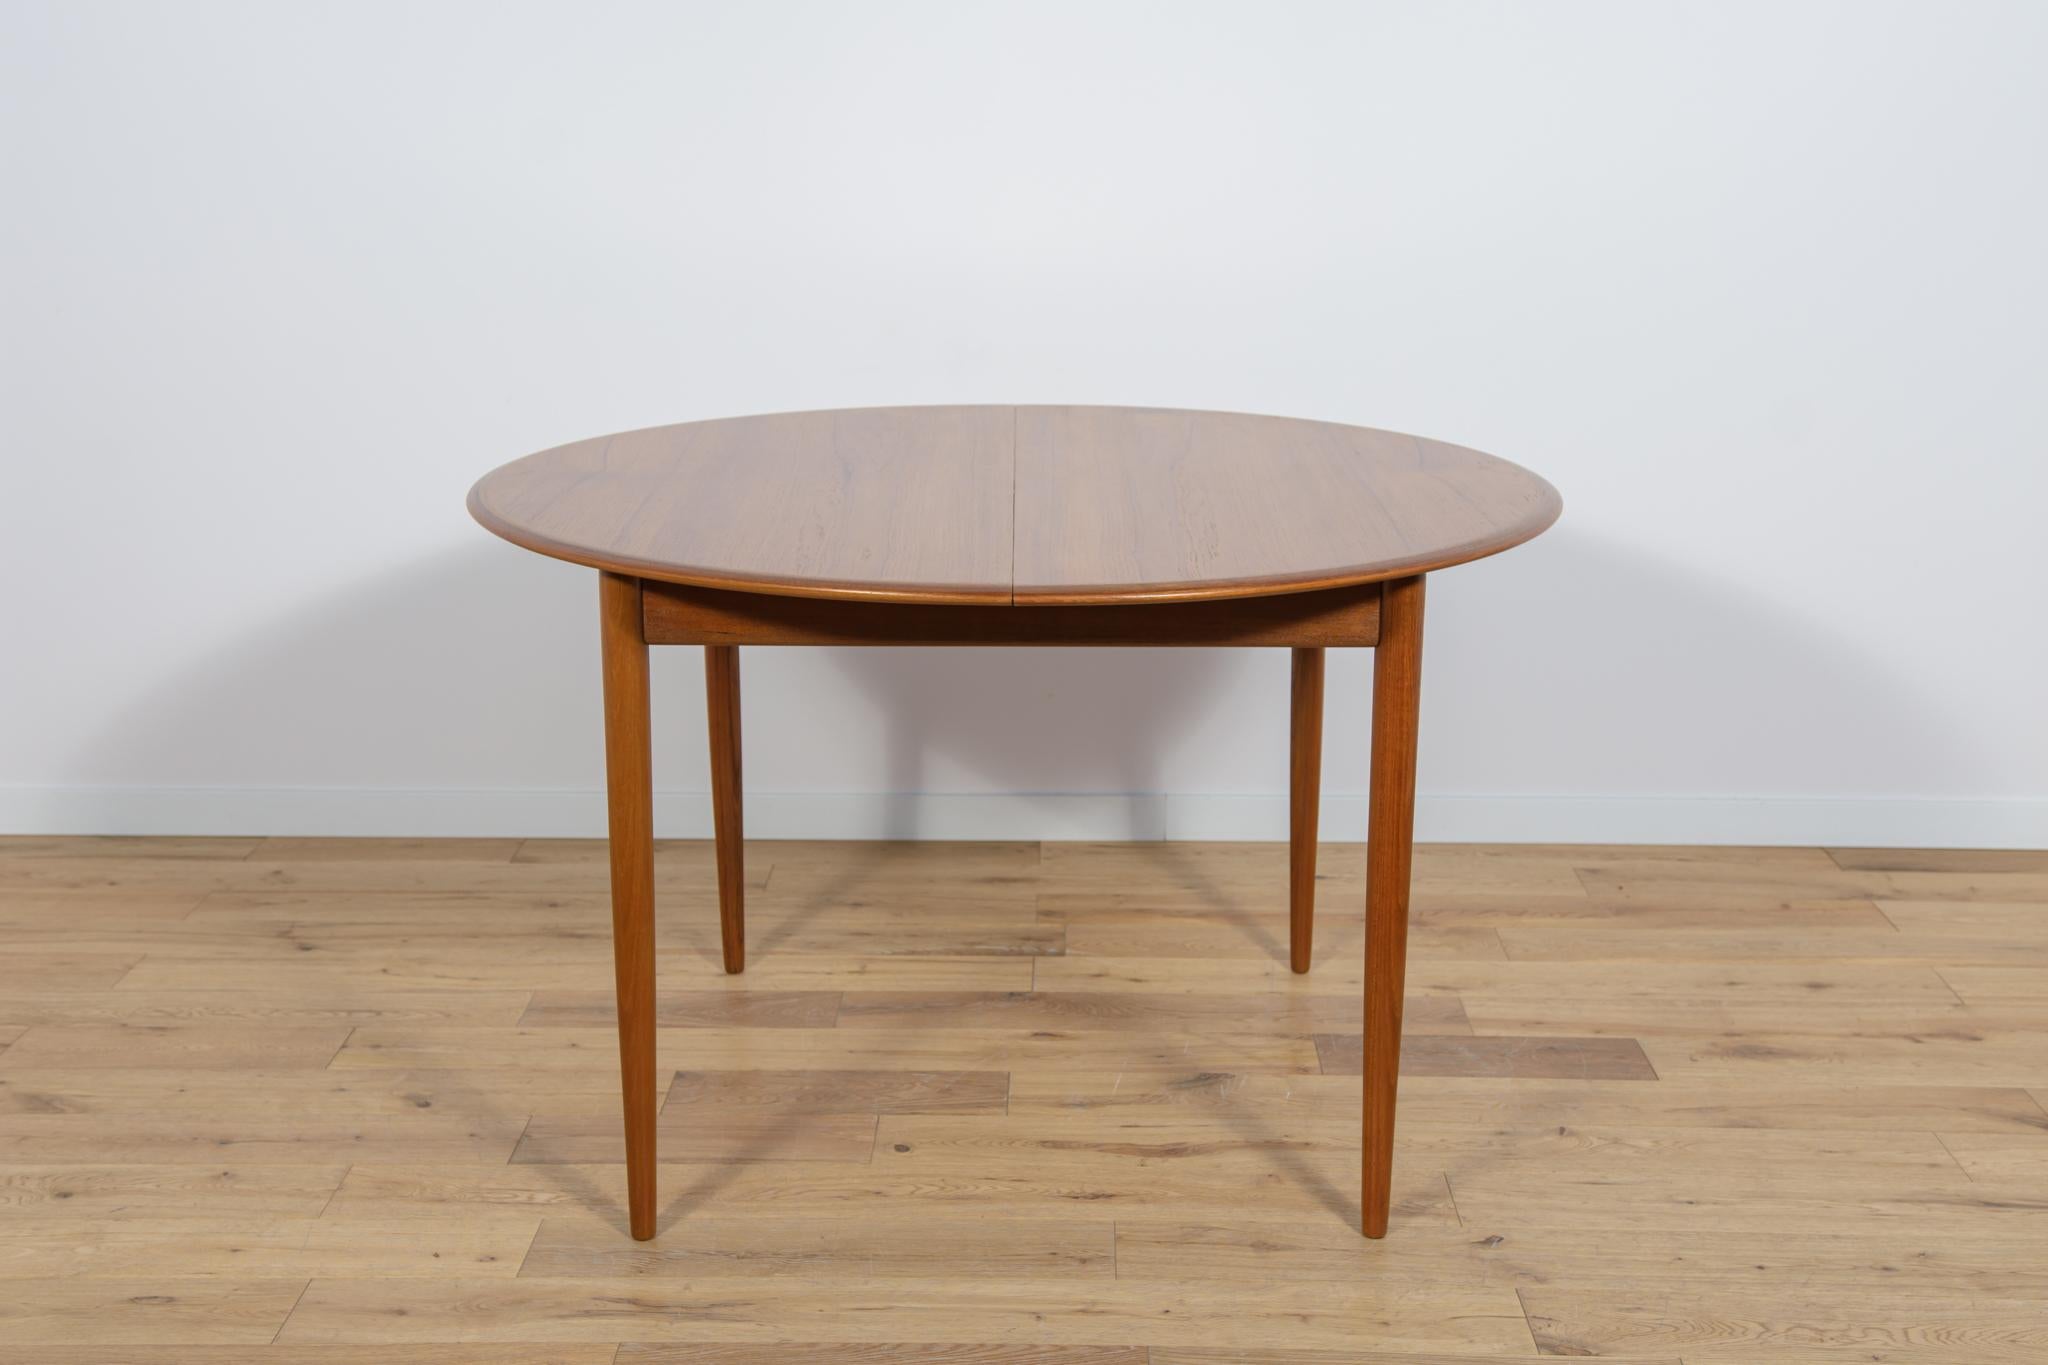 La table ronde à rallonge en bois de teck a été fabriquée au Danemark dans les années 1960. La table présente des bords solides et profilés qui lui confèrent une forme élégante et sublime. La table a été entièrement rénovée, nettoyée des anciens